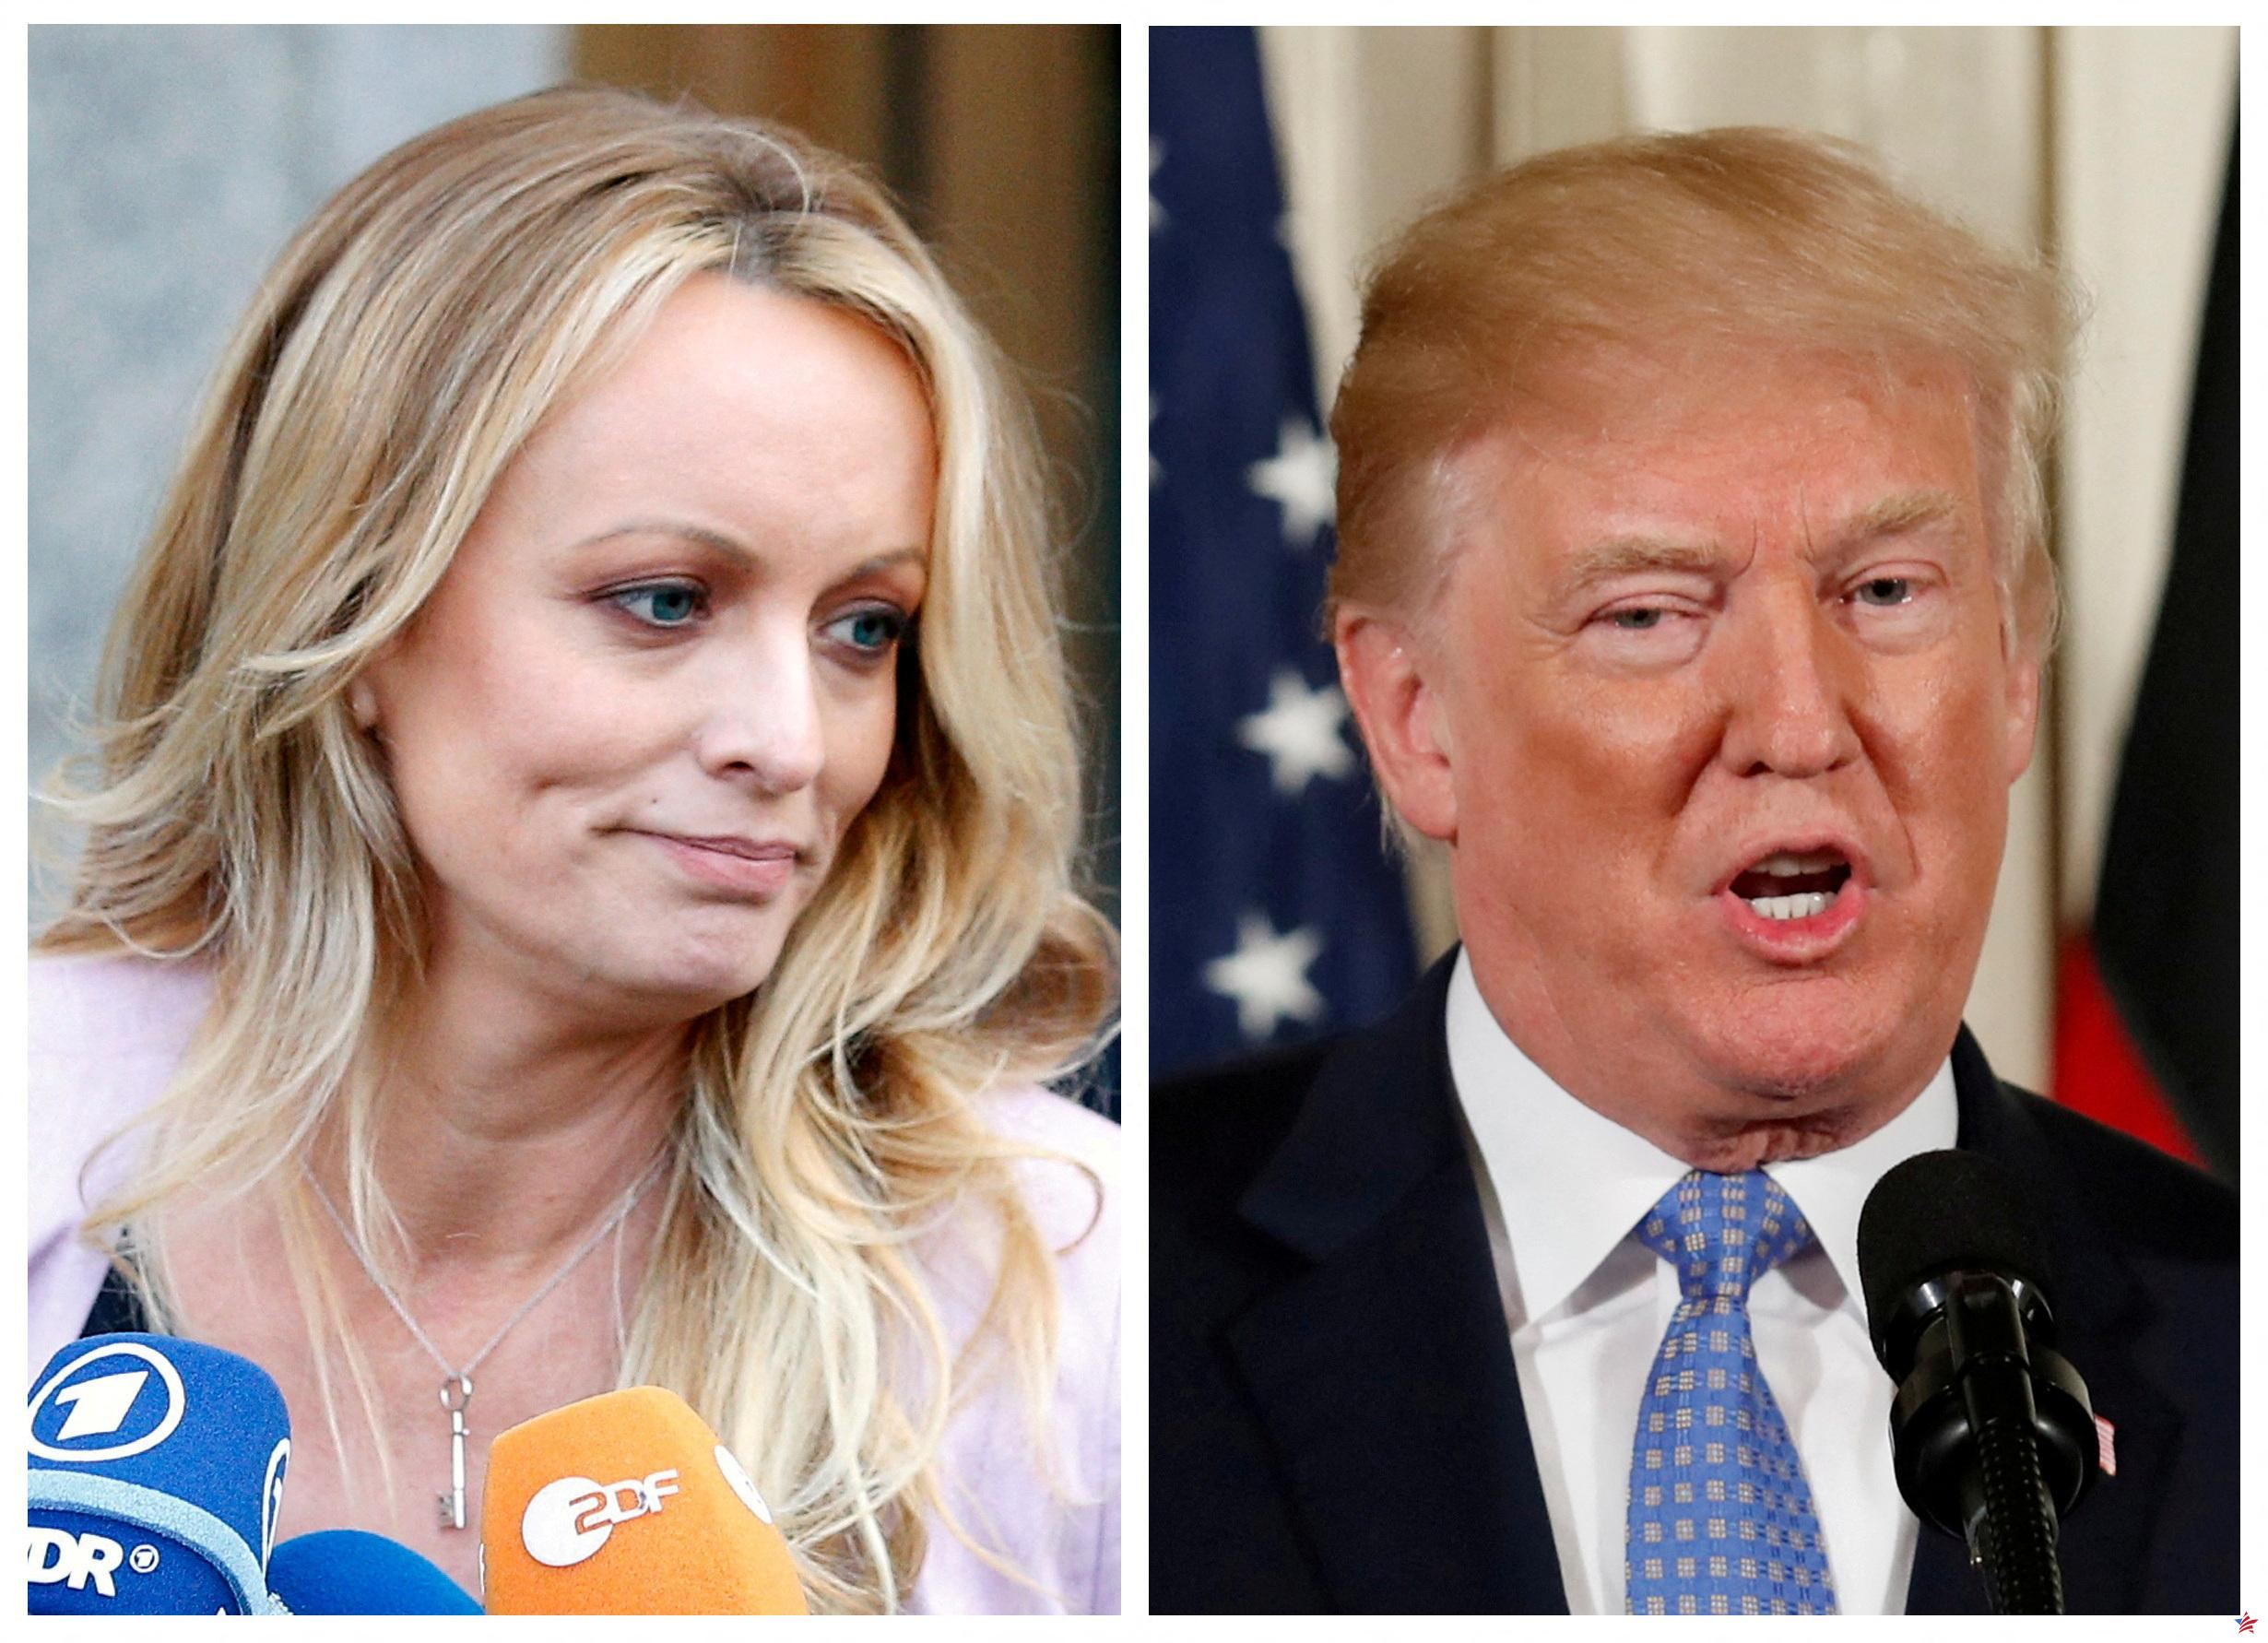 Estados Unidos: la estrella porno Stormy Daniels da su versión de su presunto romance con Trump